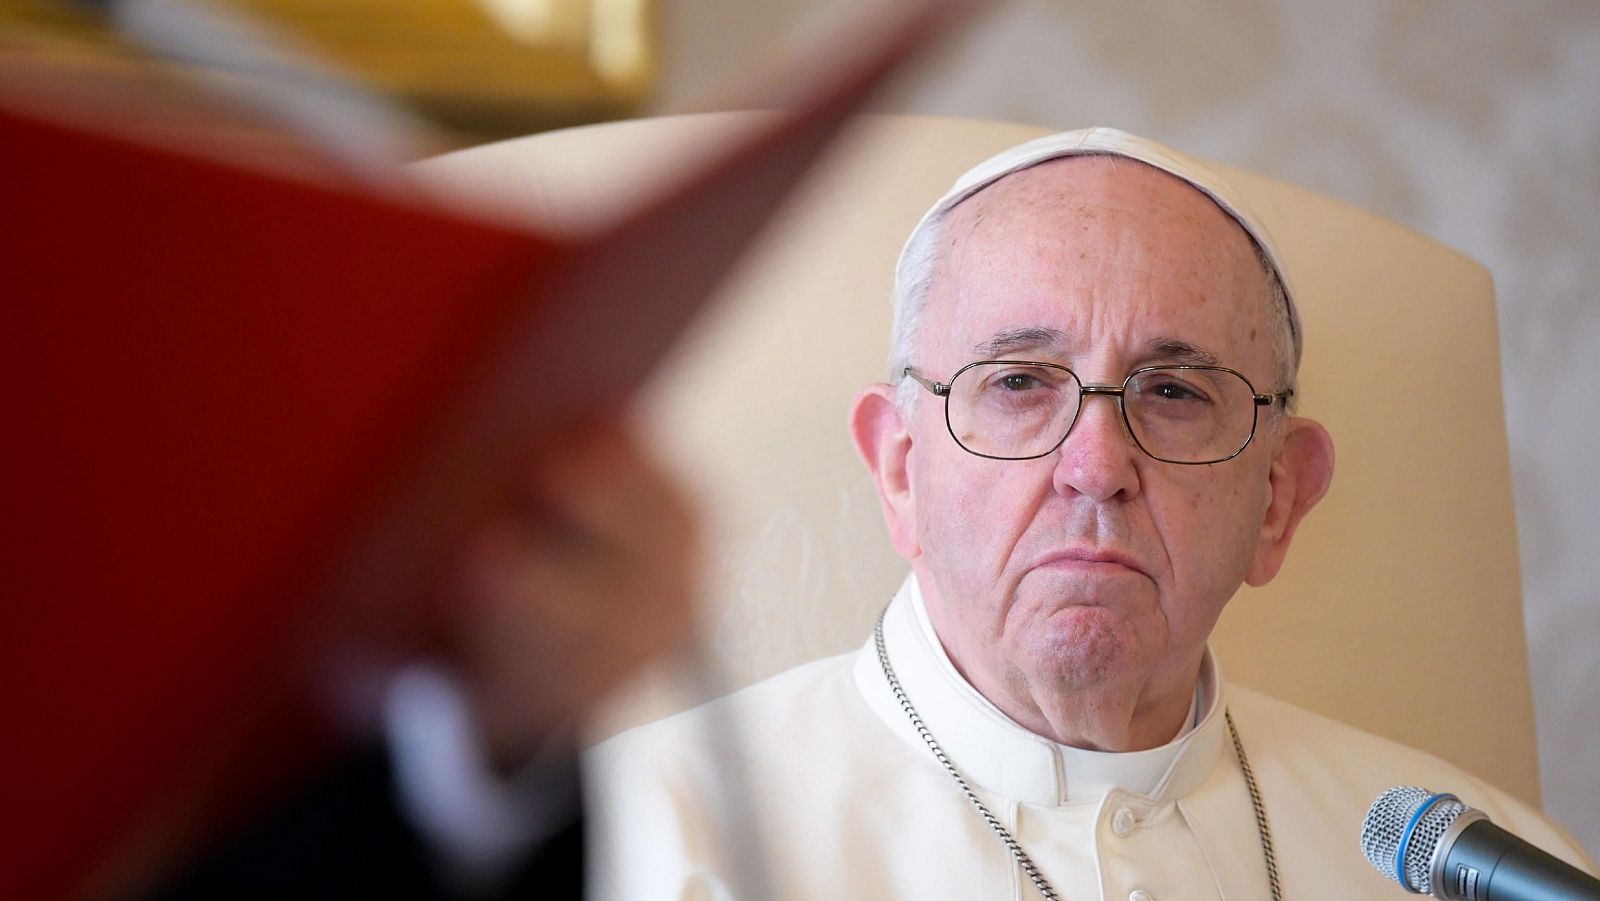 El papa insiste en "acabar con este mal" al comentar el informe sobre abusos